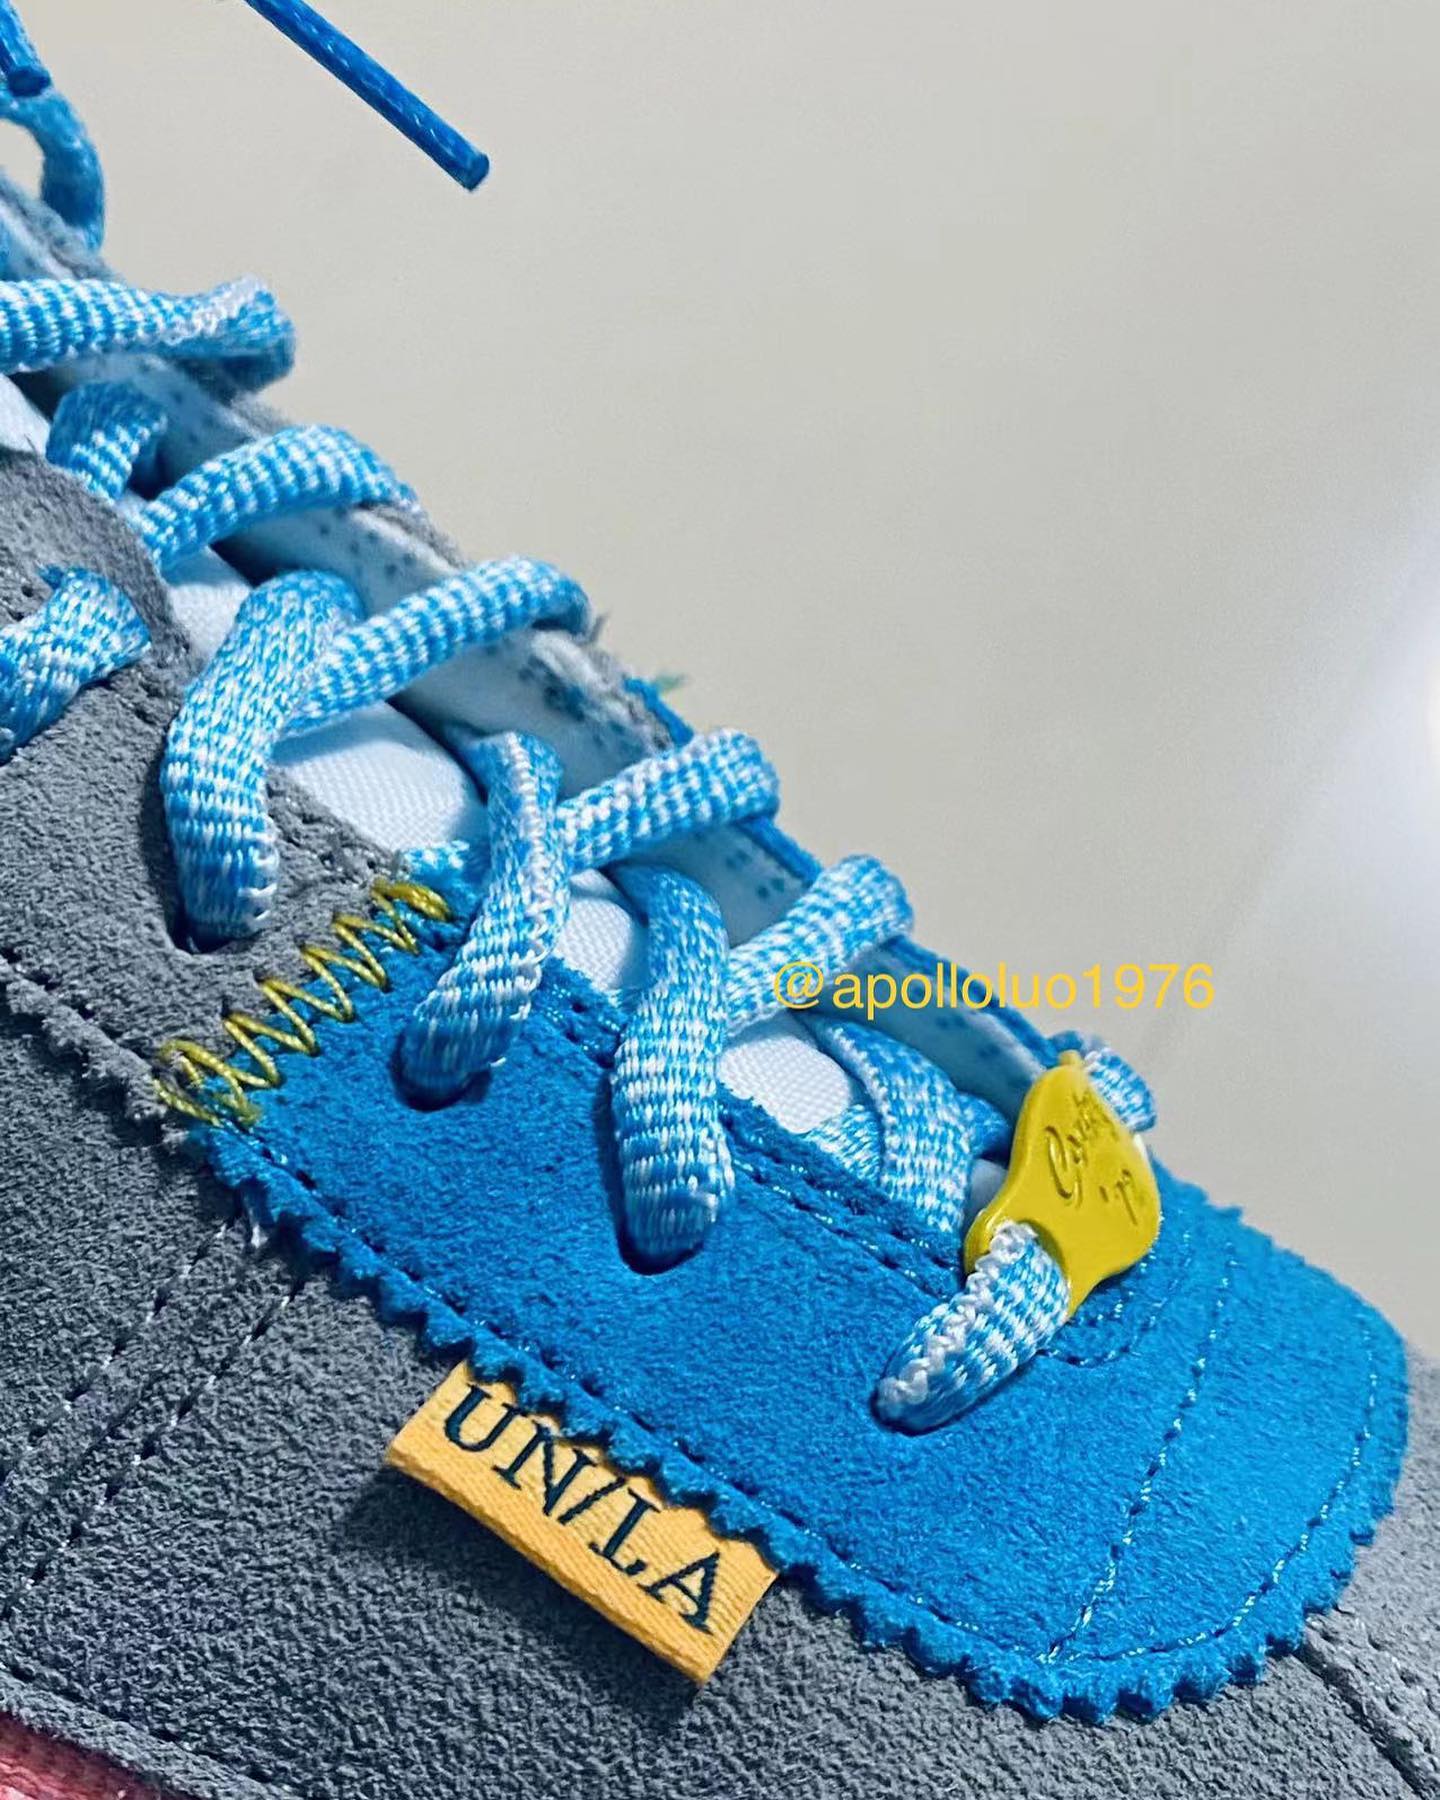 Union x Nike Cortez Grey/Blue